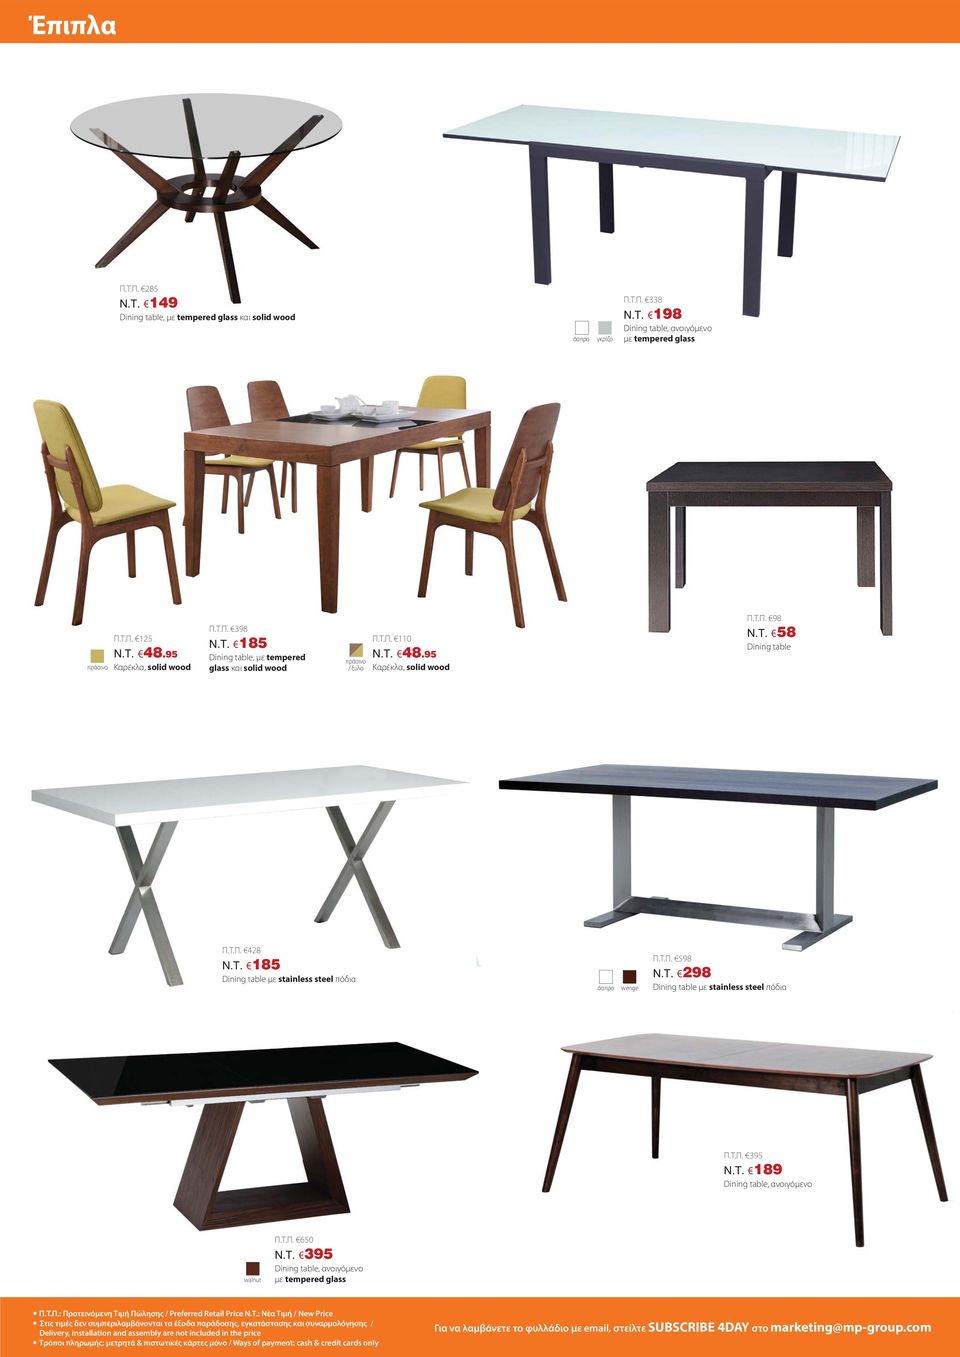 Τ.Π. 598 N.T. 298 Dining table με stainless steel πόδια Π.Τ.Π. 395 N.T. 189 Dining table, ανοιγόμενο walnut Π.Τ.Π. 650 N.T. 395 Dining table, ανοιγόμενο με tempered glass Π.Τ.Π.: Προτεινόμενη Τιμή Πώλησης / Preferred Retail Price N.